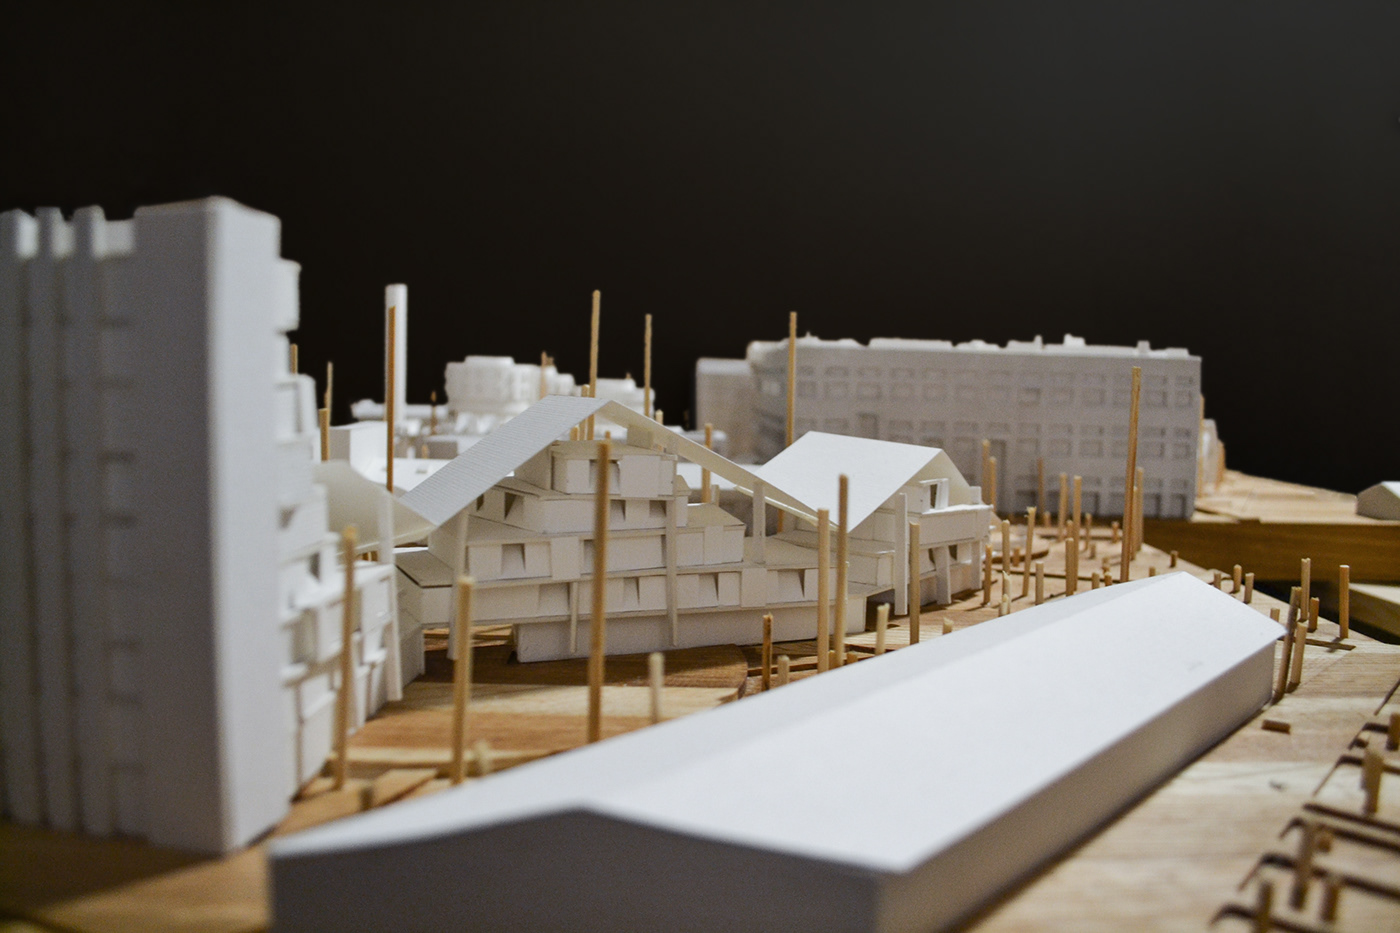 Archbiennale сантехприбор реновация архитектура макет Биеннале архбиеннале визуализация коливинг